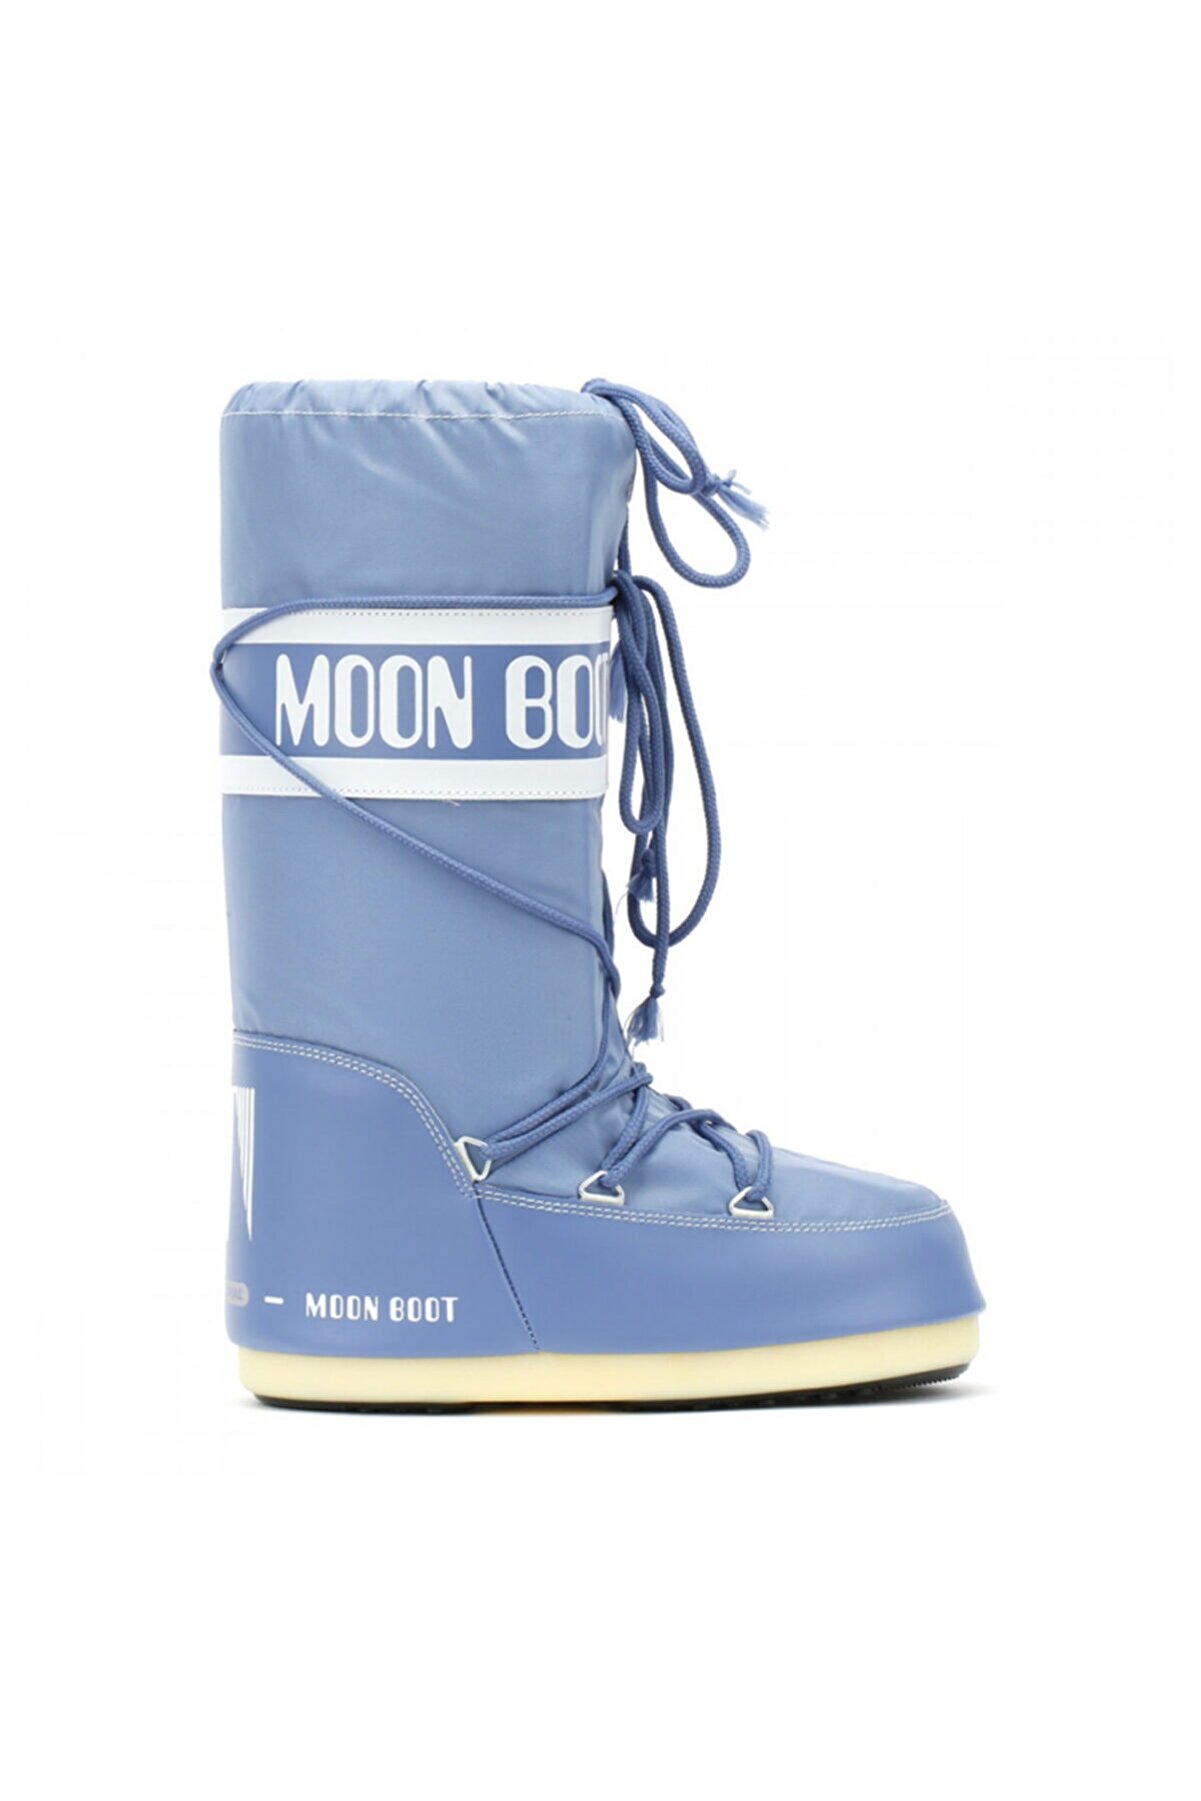 Moon Boot Mavi Kadın Bot 14004400 078